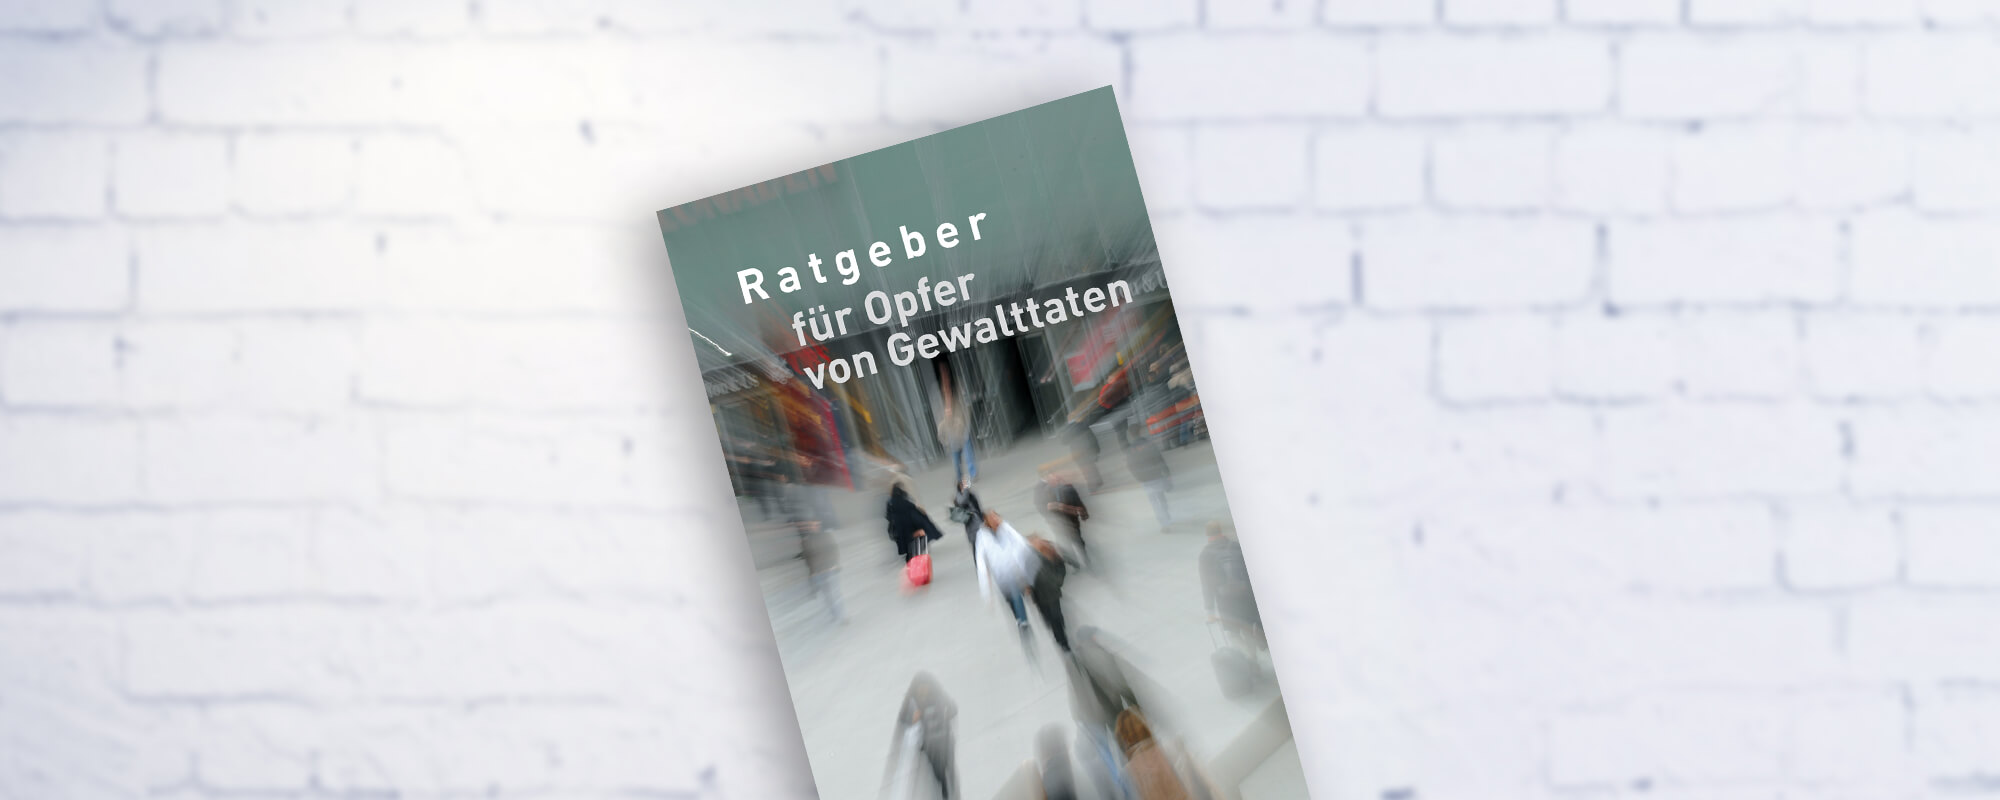 Cover der Broschüre "Ratgeber für Opfer von Gewalttaten" vom Landschaftsverband Westfalen-Lippe Landschaftsverband Rheinland